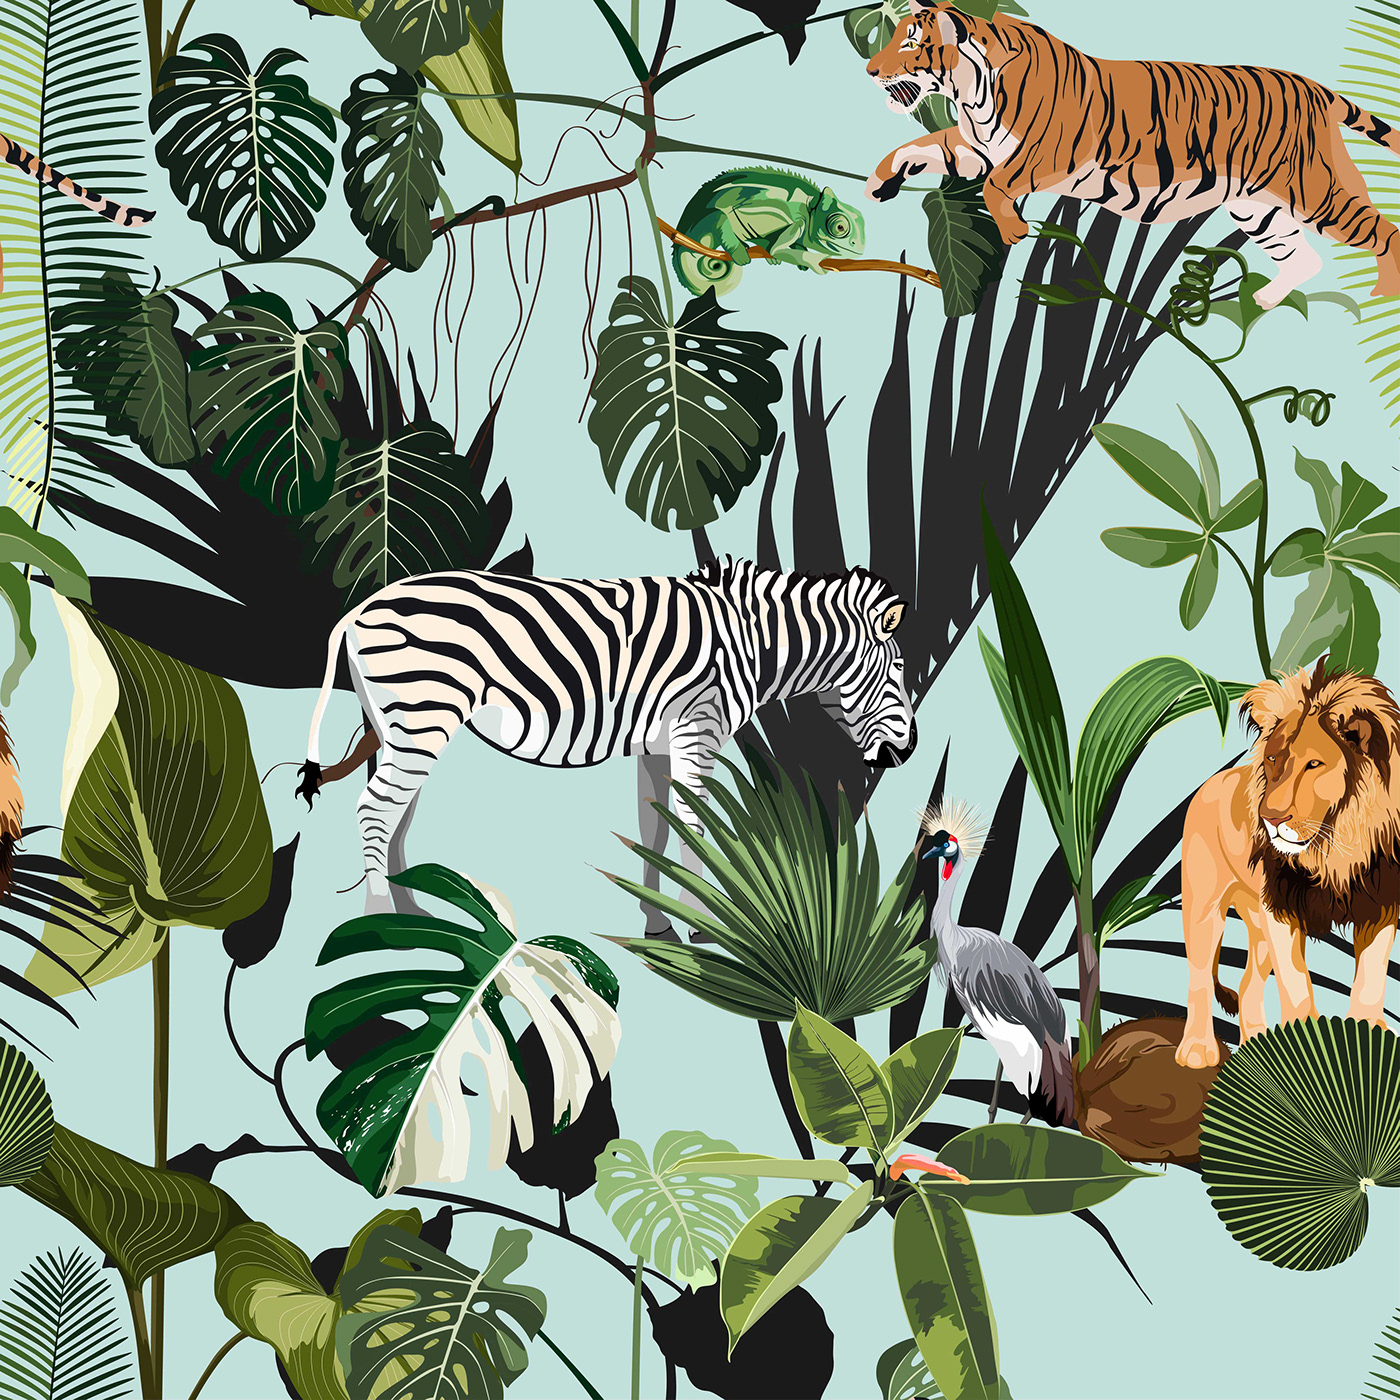  Exotic safari wallpaper.